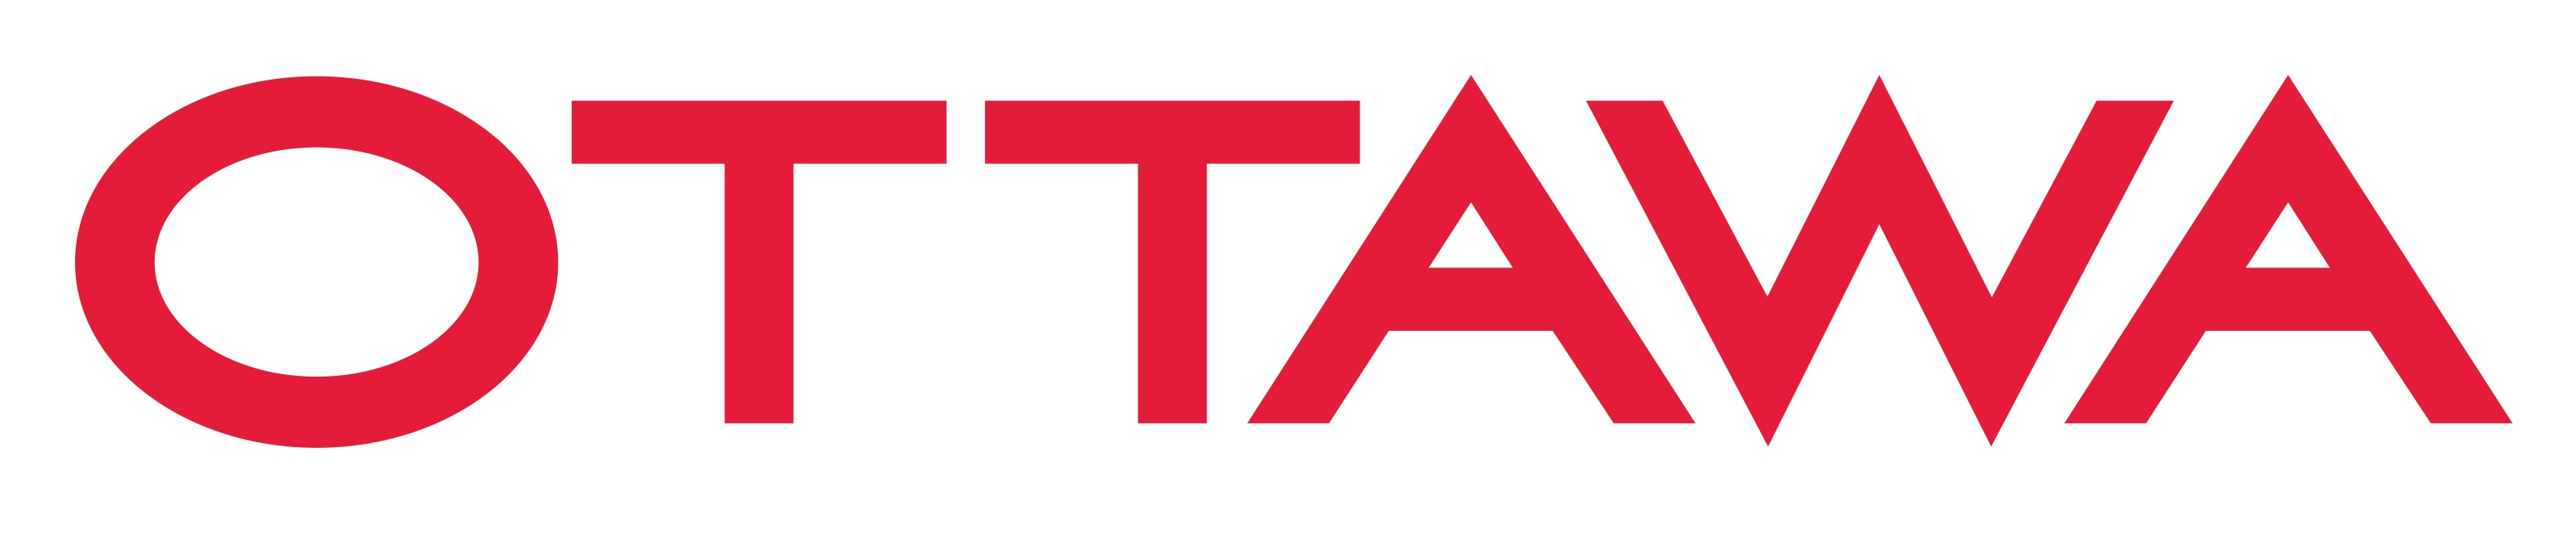 Ottawa-Wordmark-Logo-colour cropped